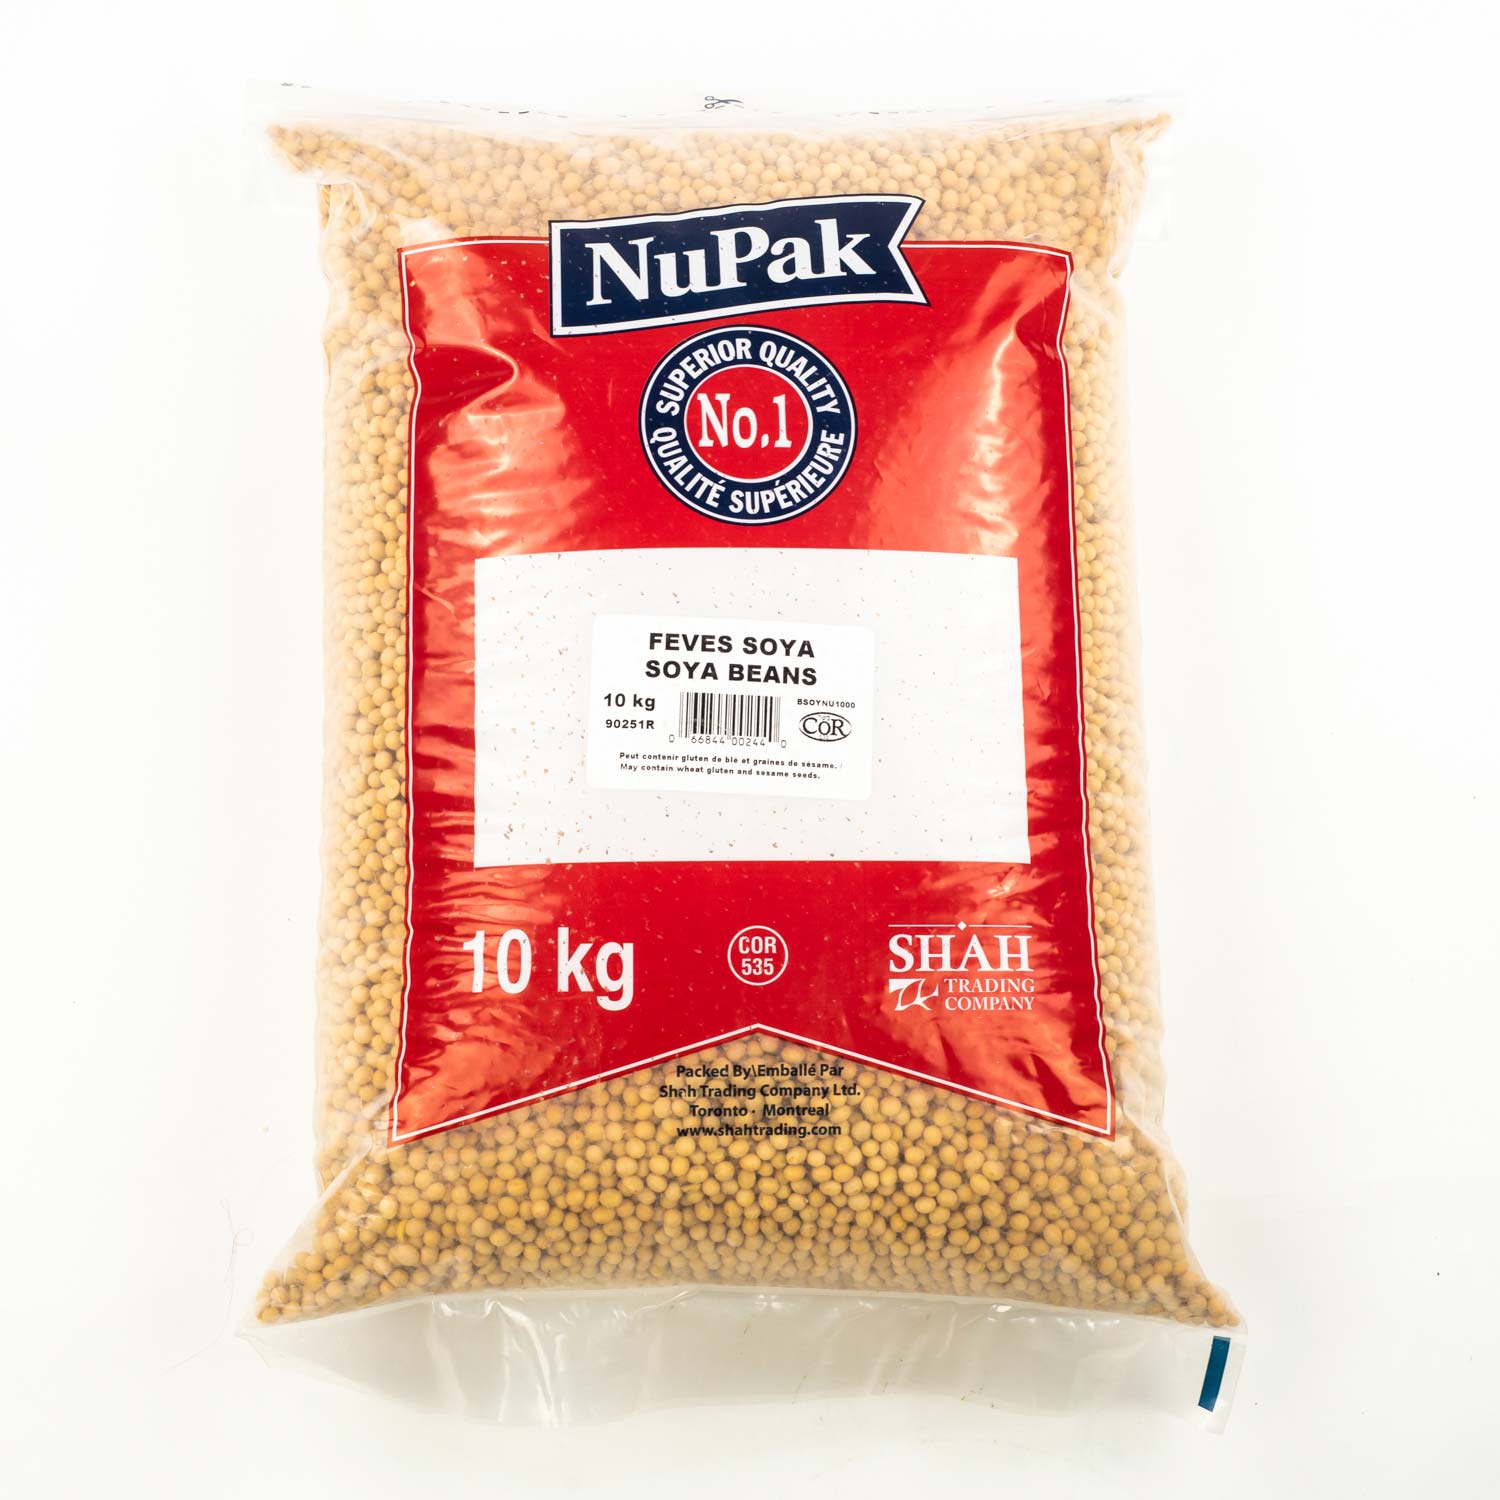 Germes de blé 1 kg - Grain de spécialité